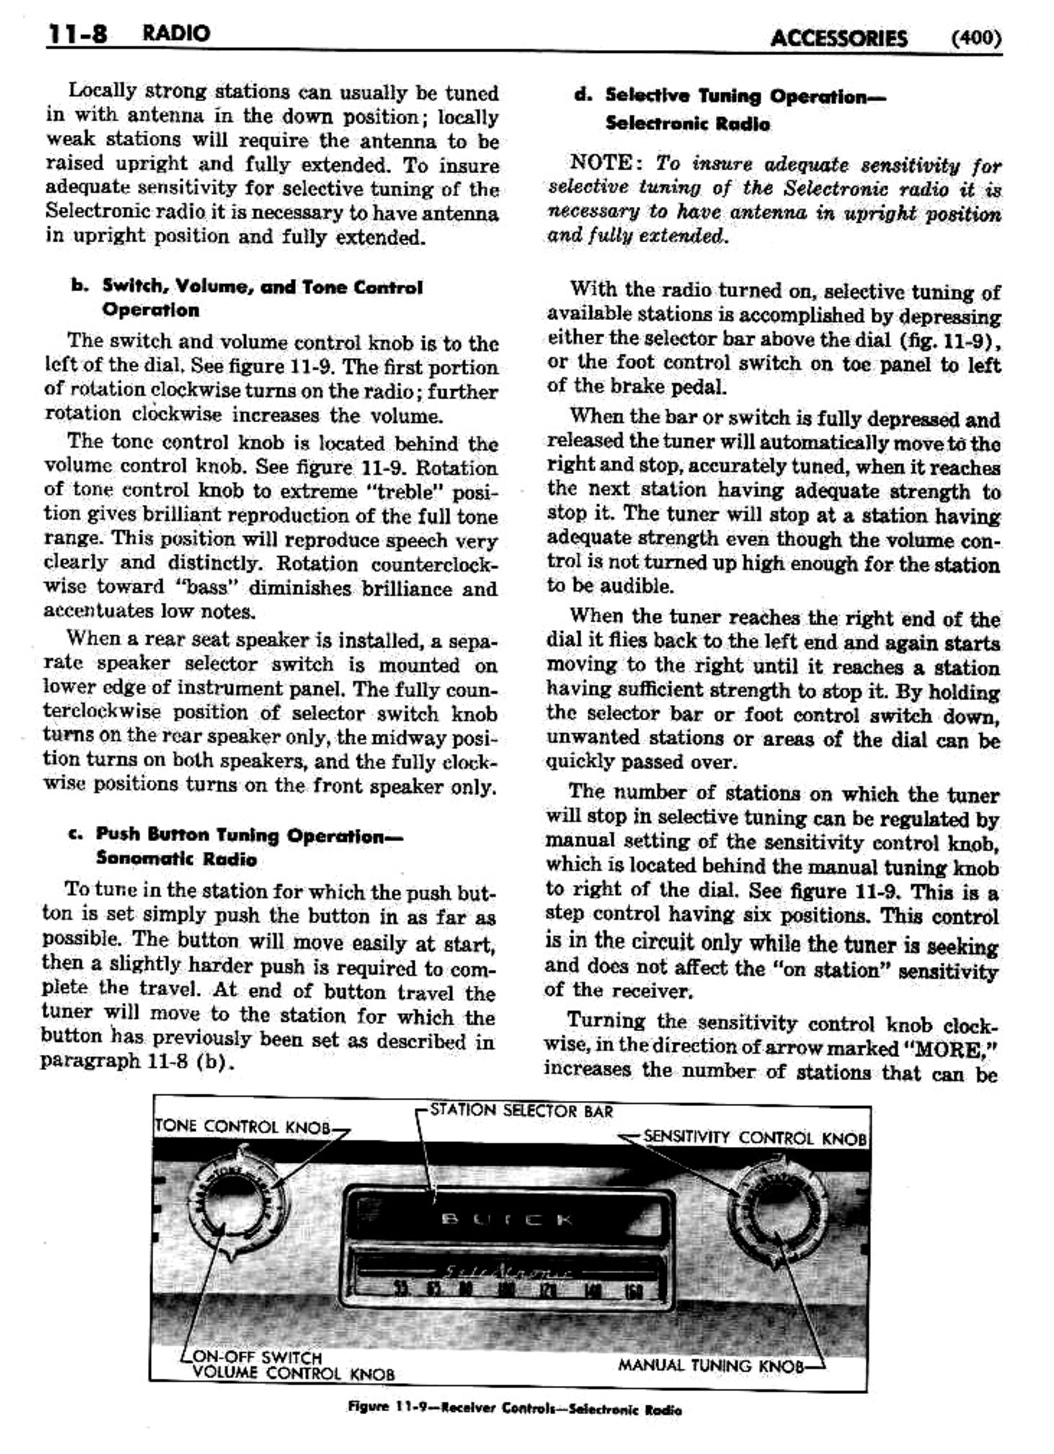 n_12 1951 Buick Shop Manual - Accessories-008-008.jpg